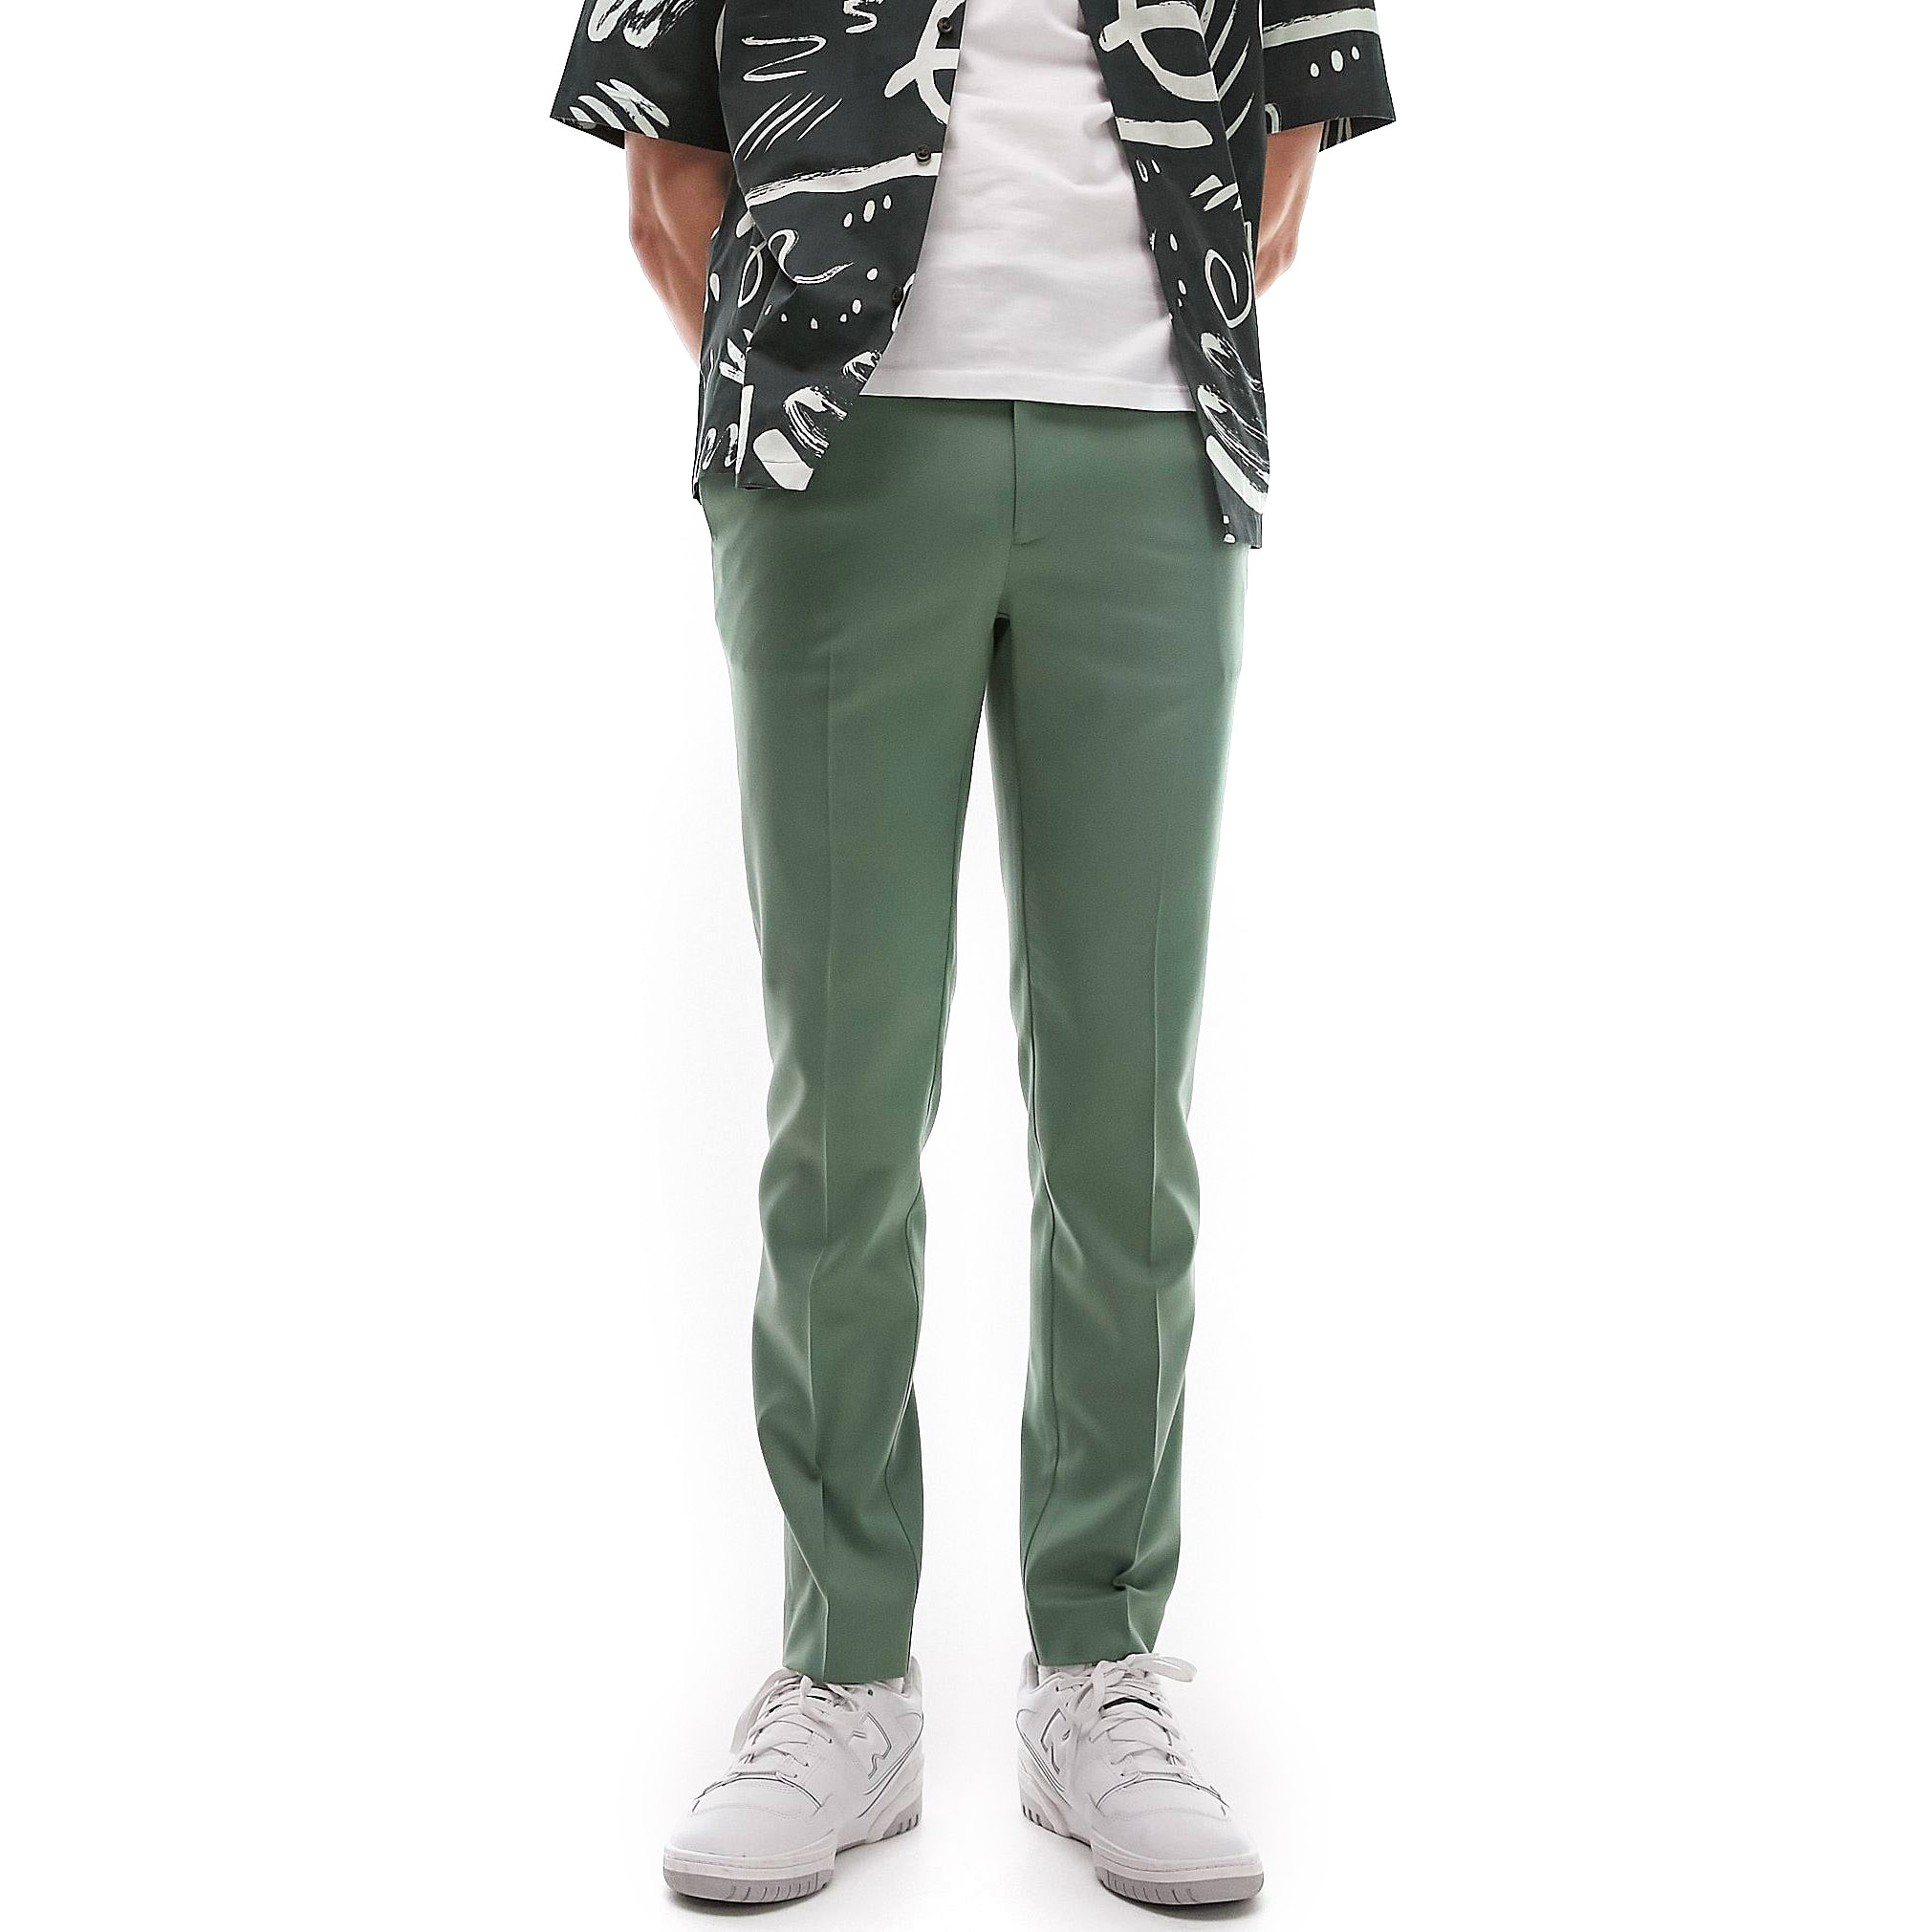 Брюки Topman Skinny Smart With Elastic Waistband, серовато-зеленый зауженные брюки с эластичным поясом zarina 9421209702 серый 48